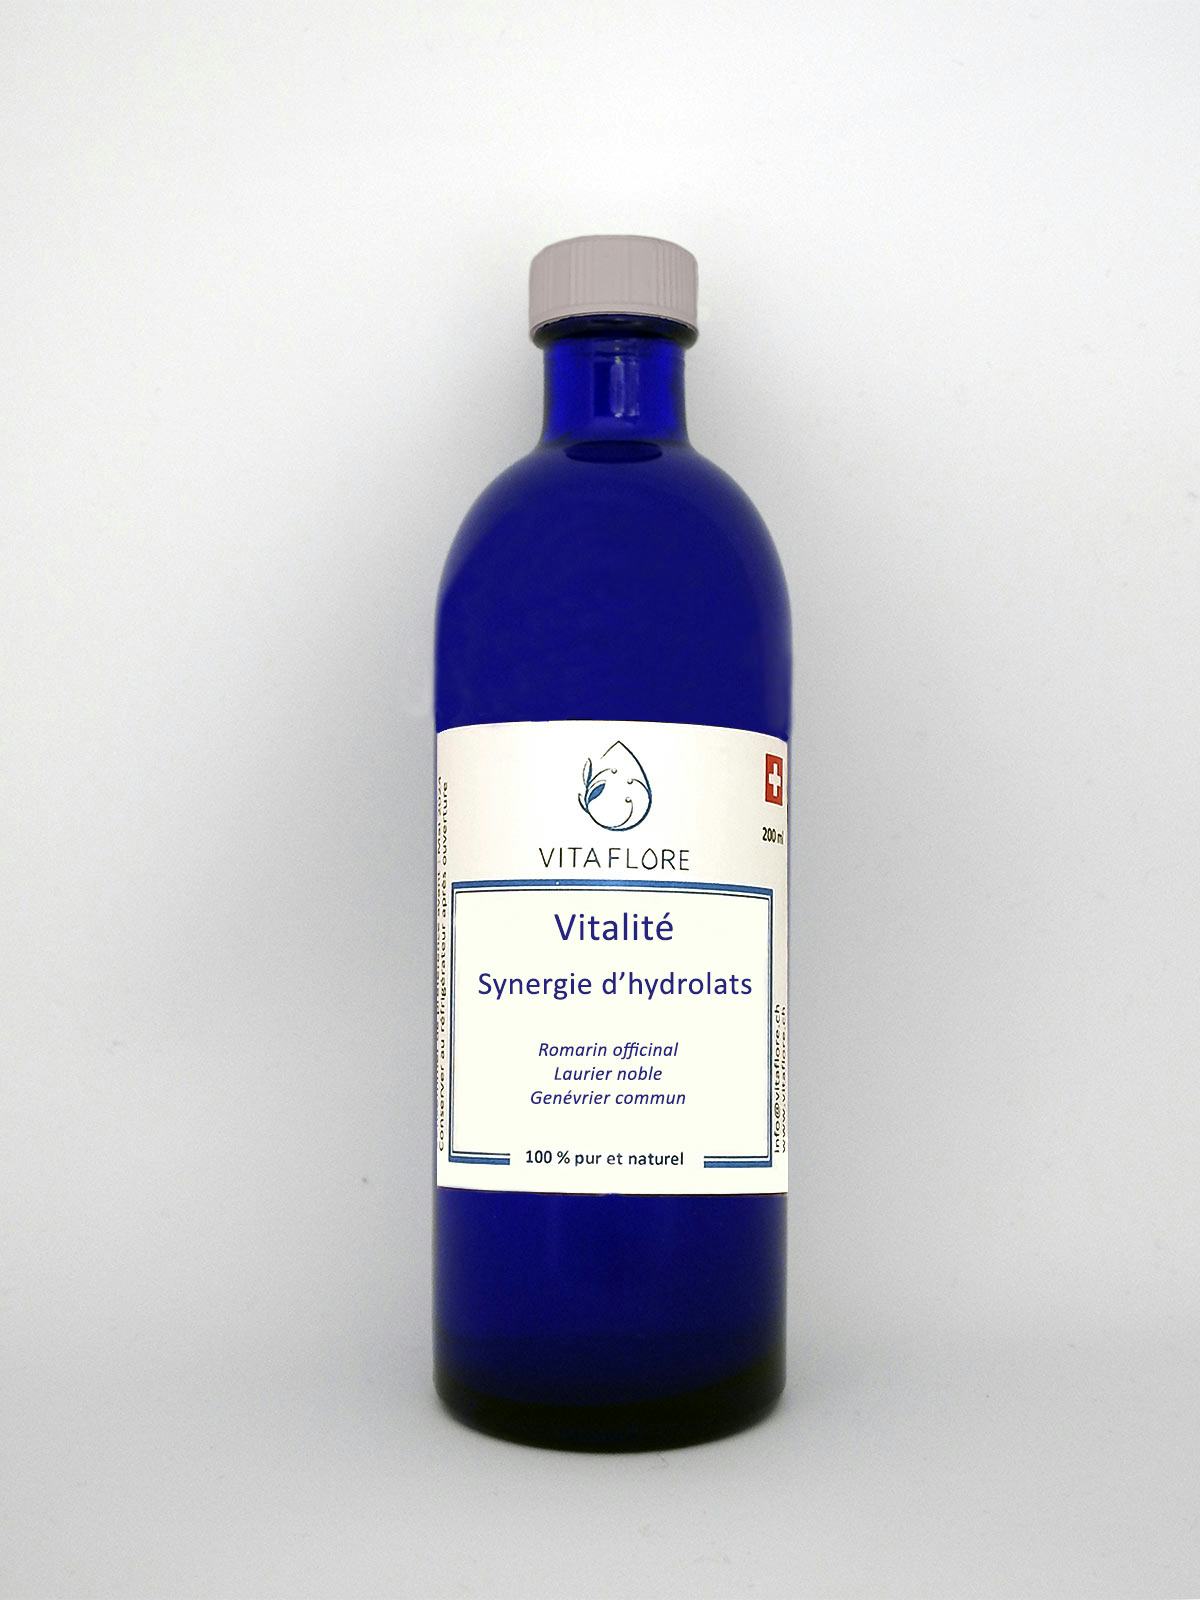 Synergie d’hydrolats – Vitalité, Vitaflore, Grimisuat, image 1 | Mimelis